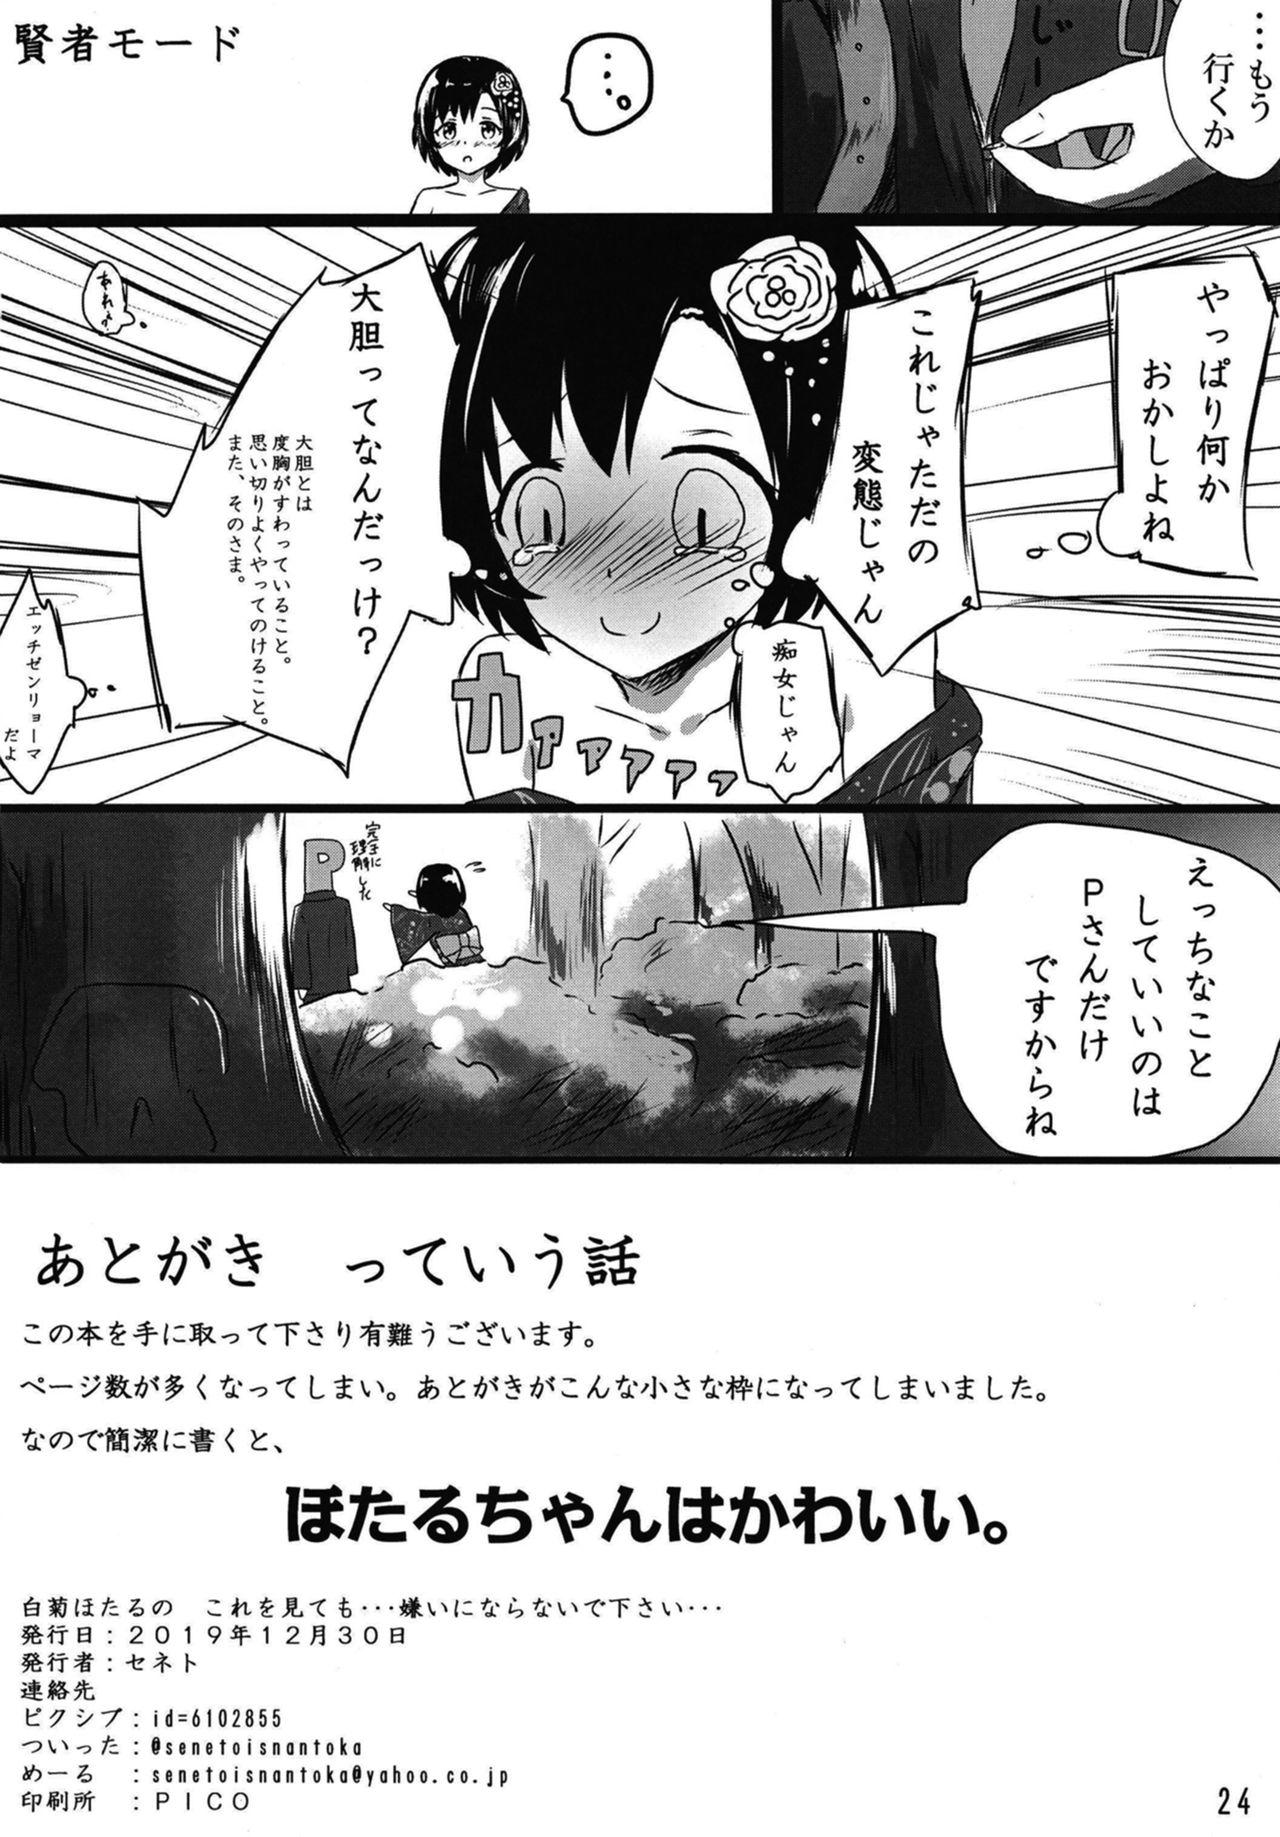 Job Shiragiku Hotaru no kore o Mitemo... Kirai ni naranai de Kudasai - The idolmaster Tight - Page 24